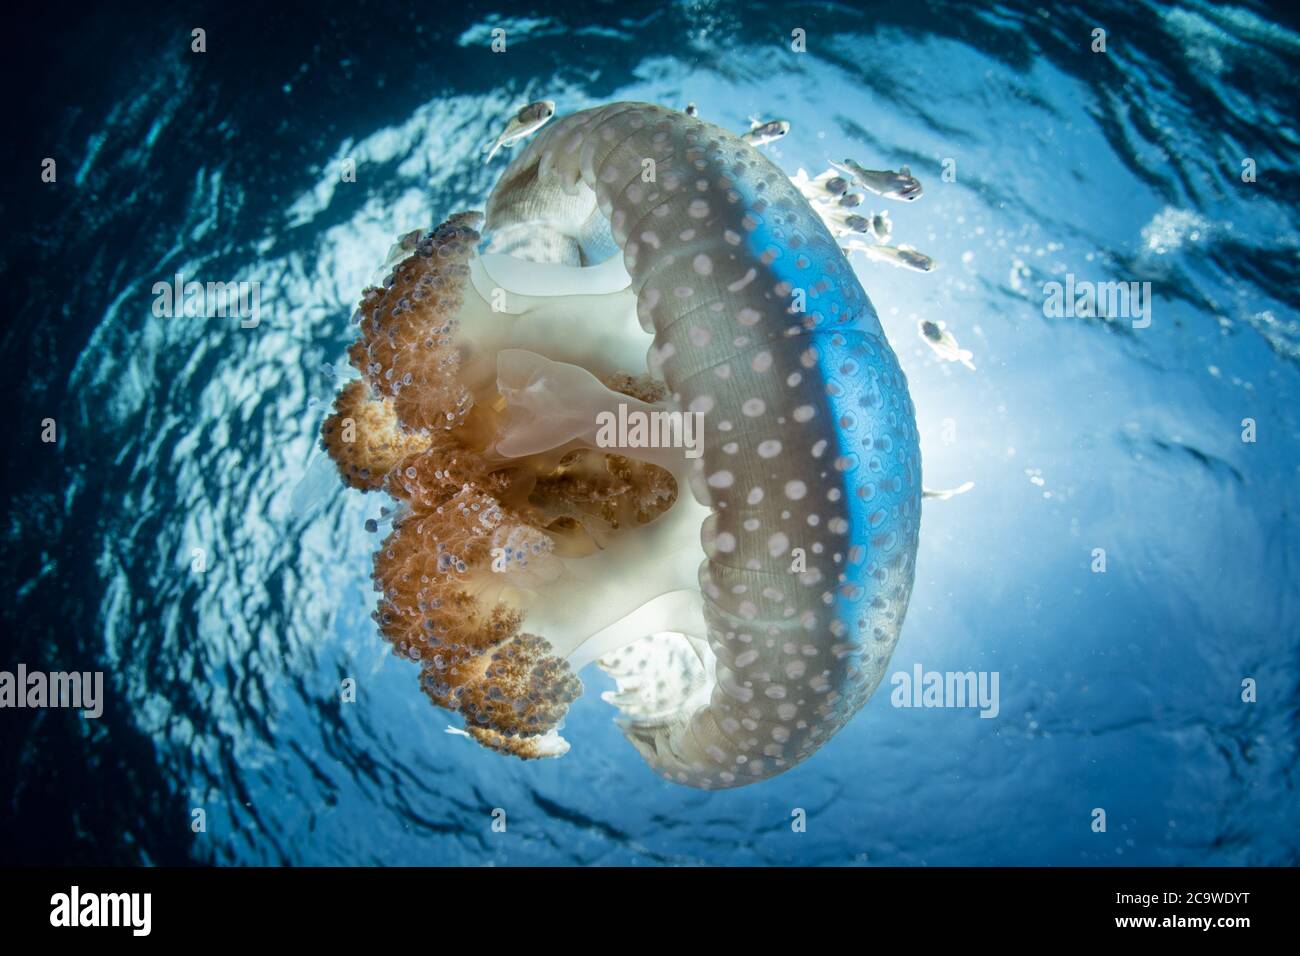 Una bella medusa si discosta attraverso acque limpide e blu in una forte corrente vicino all'isola di Alor, Indonesia. Quest'area ha un'elevata biodiversità marina. Foto Stock